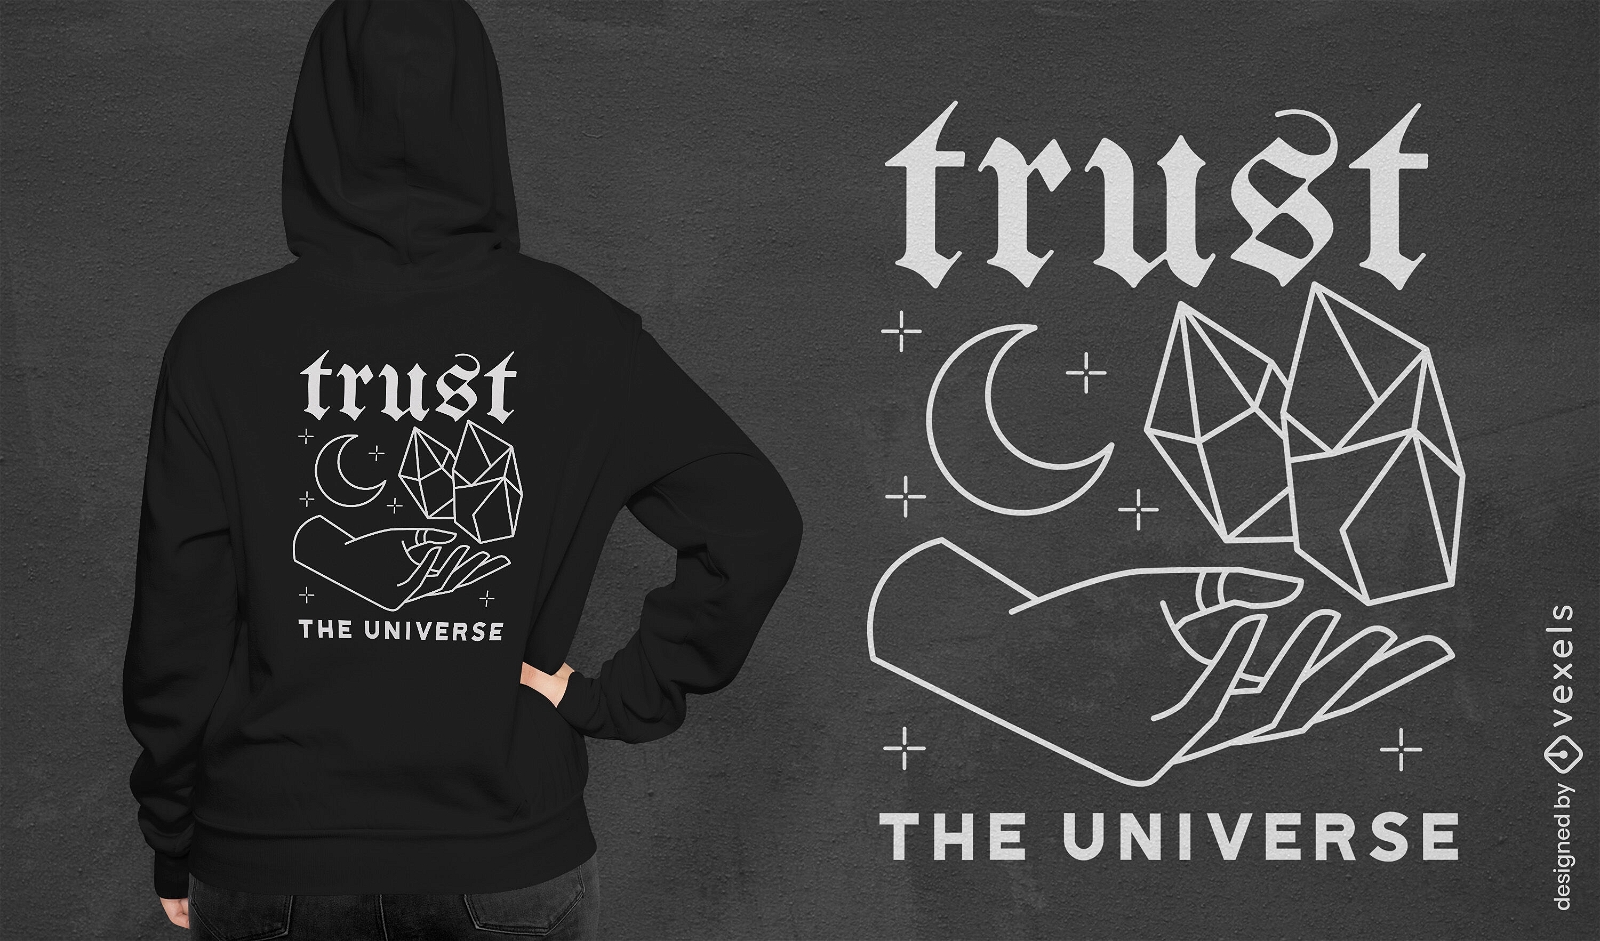 Confie no design esotérico de camiseta do universo